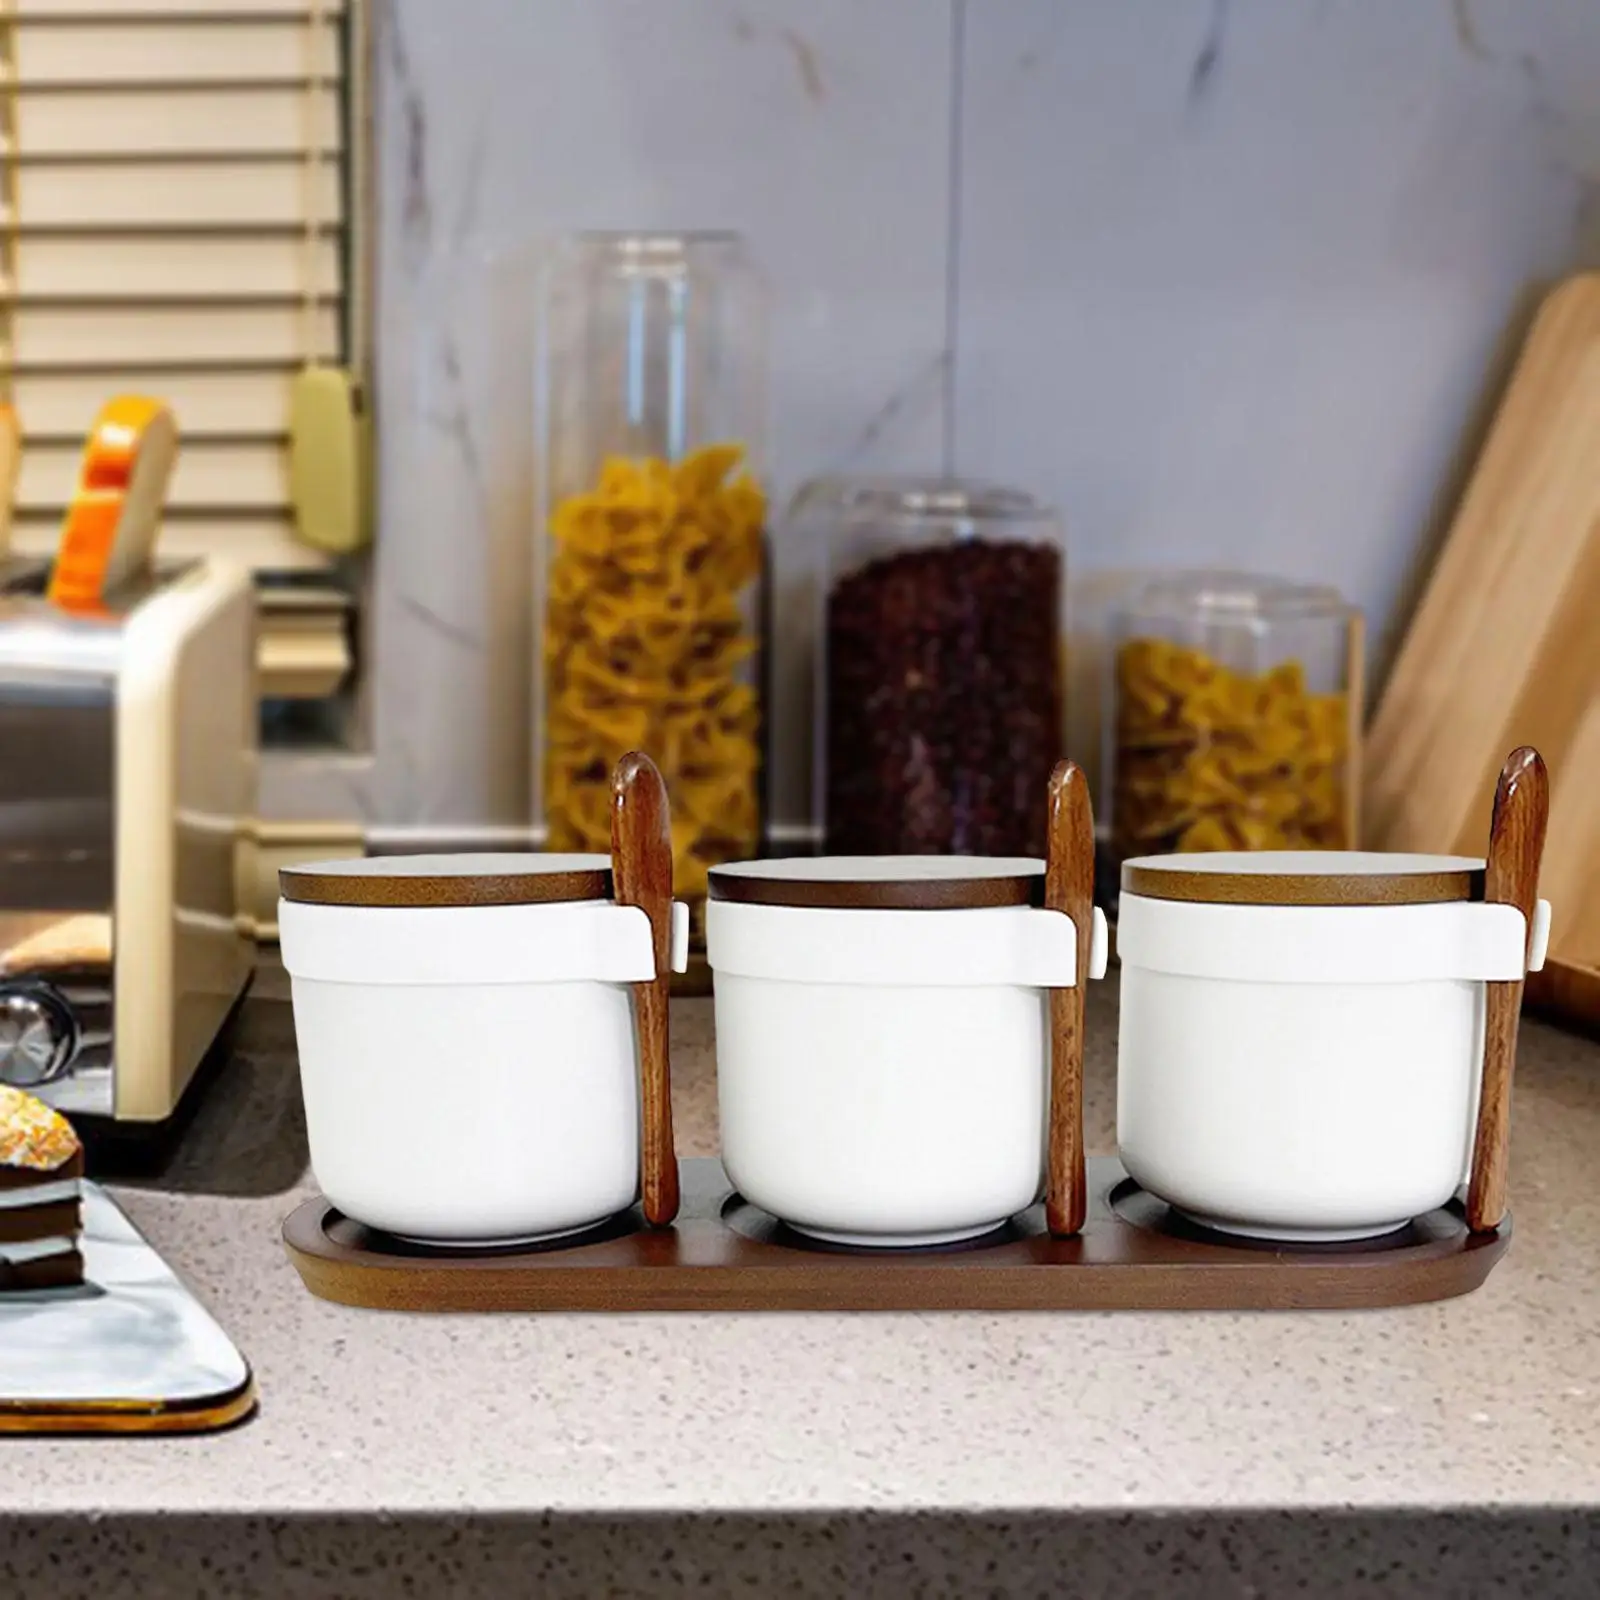 3x Ceramic Spice Jars Spice Bowls Food Storage Canister Dustproof Porcelain Condiment Jars Set for Kitchen Storage Home Sugar